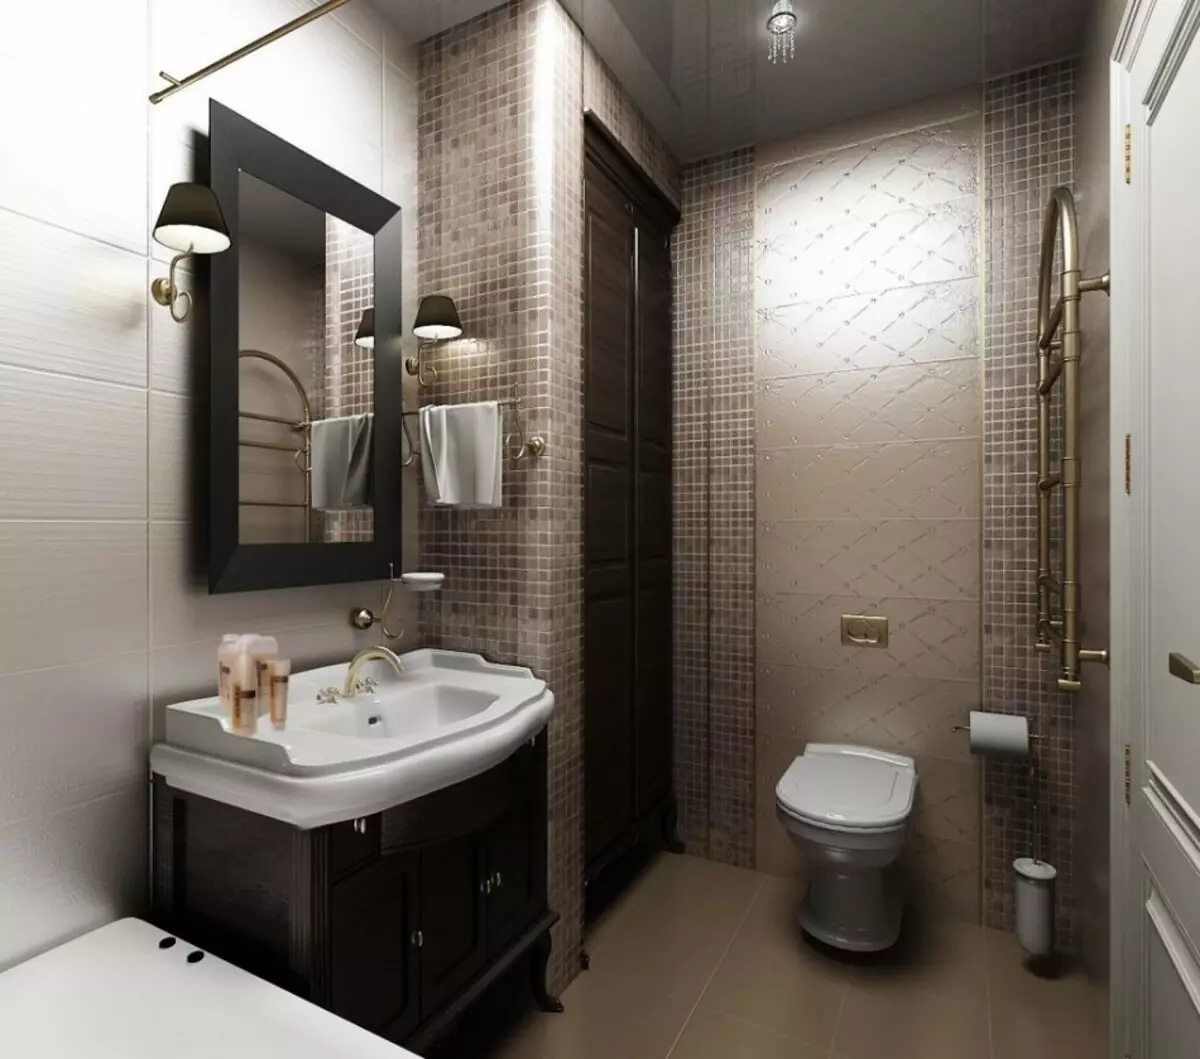 ہائی ٹیک باتھ روم (62 فوٹو): ایک کمرہ اپارٹمنٹ میں ایک چھوٹا سا کمرہ ڈیزائن، فرنیچر اور پلمبنگ کا انتخاب 21442_42